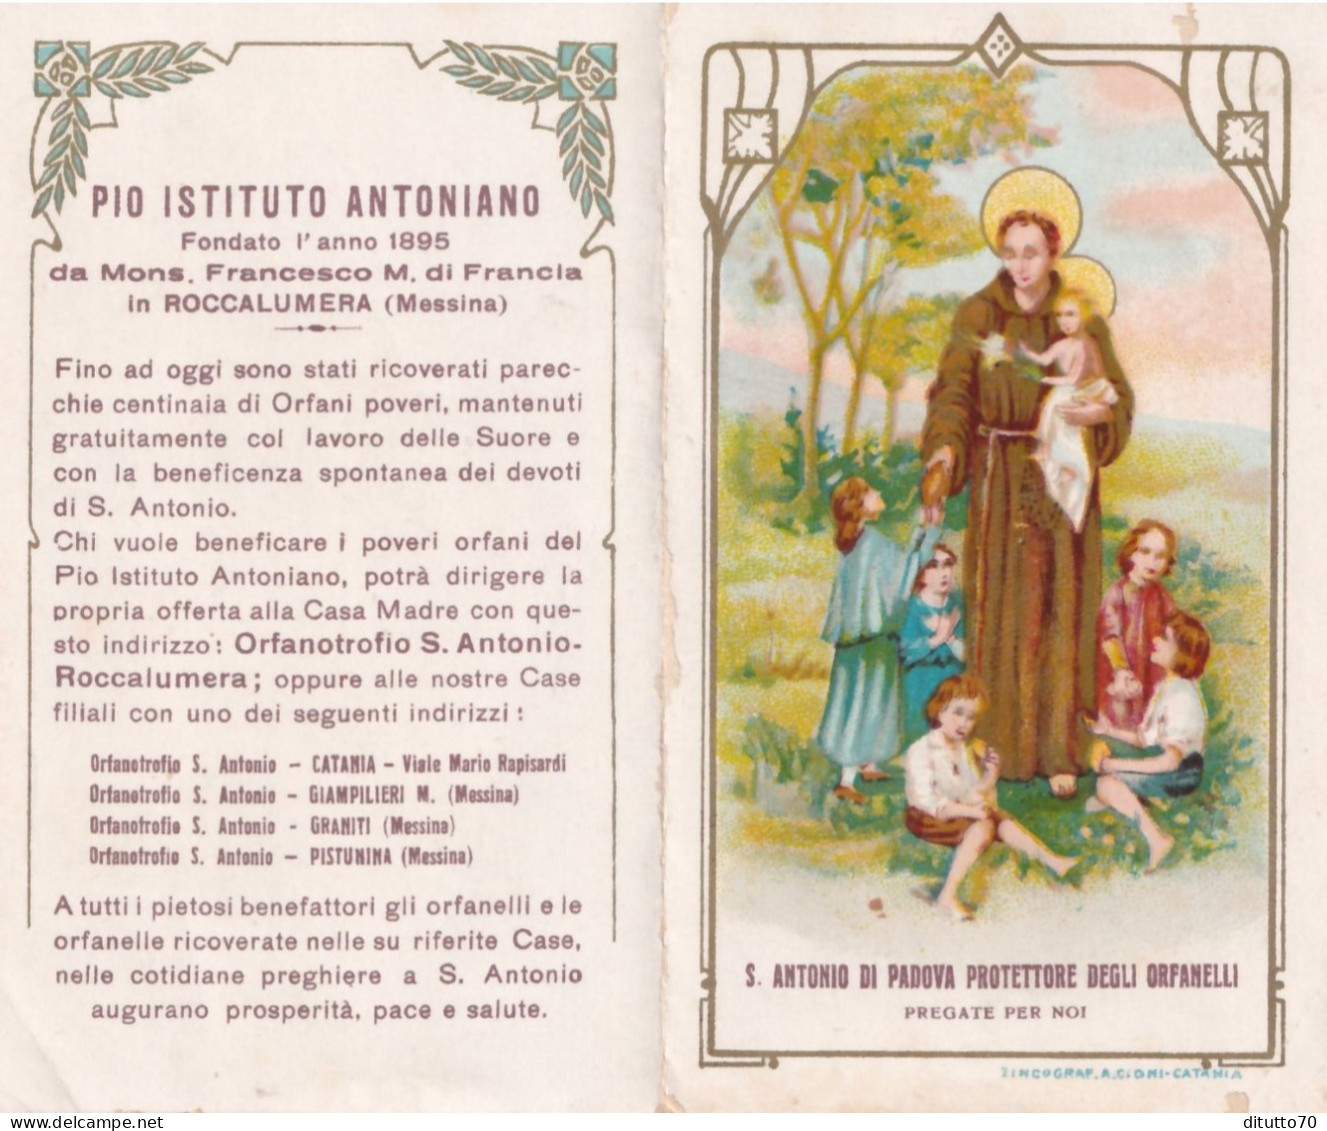 Calendarietto - Pia Istituto Antoniano  Fondata L'anno 1895 Da Mons Francesco M. Di Francia  - N Roccalumera - Messina - - Formato Piccolo : 1921-40